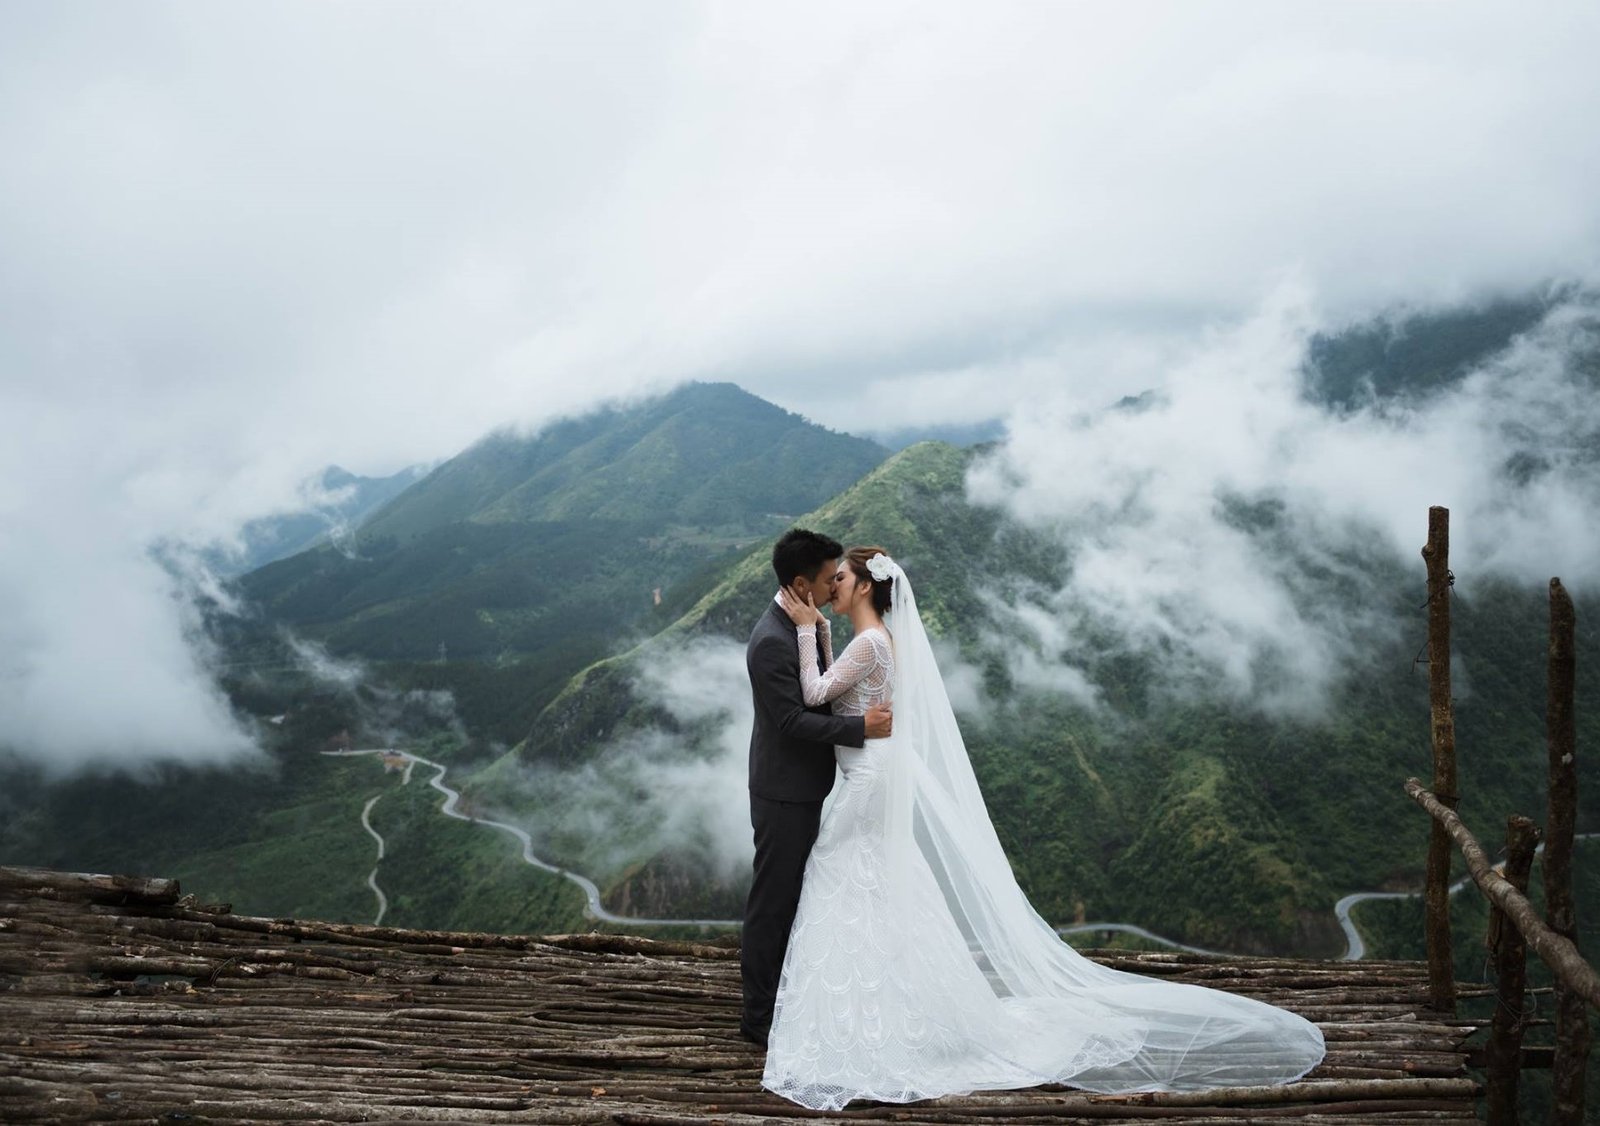 Chụp hình cưới ngoại cảnh Sapa Lào Cai